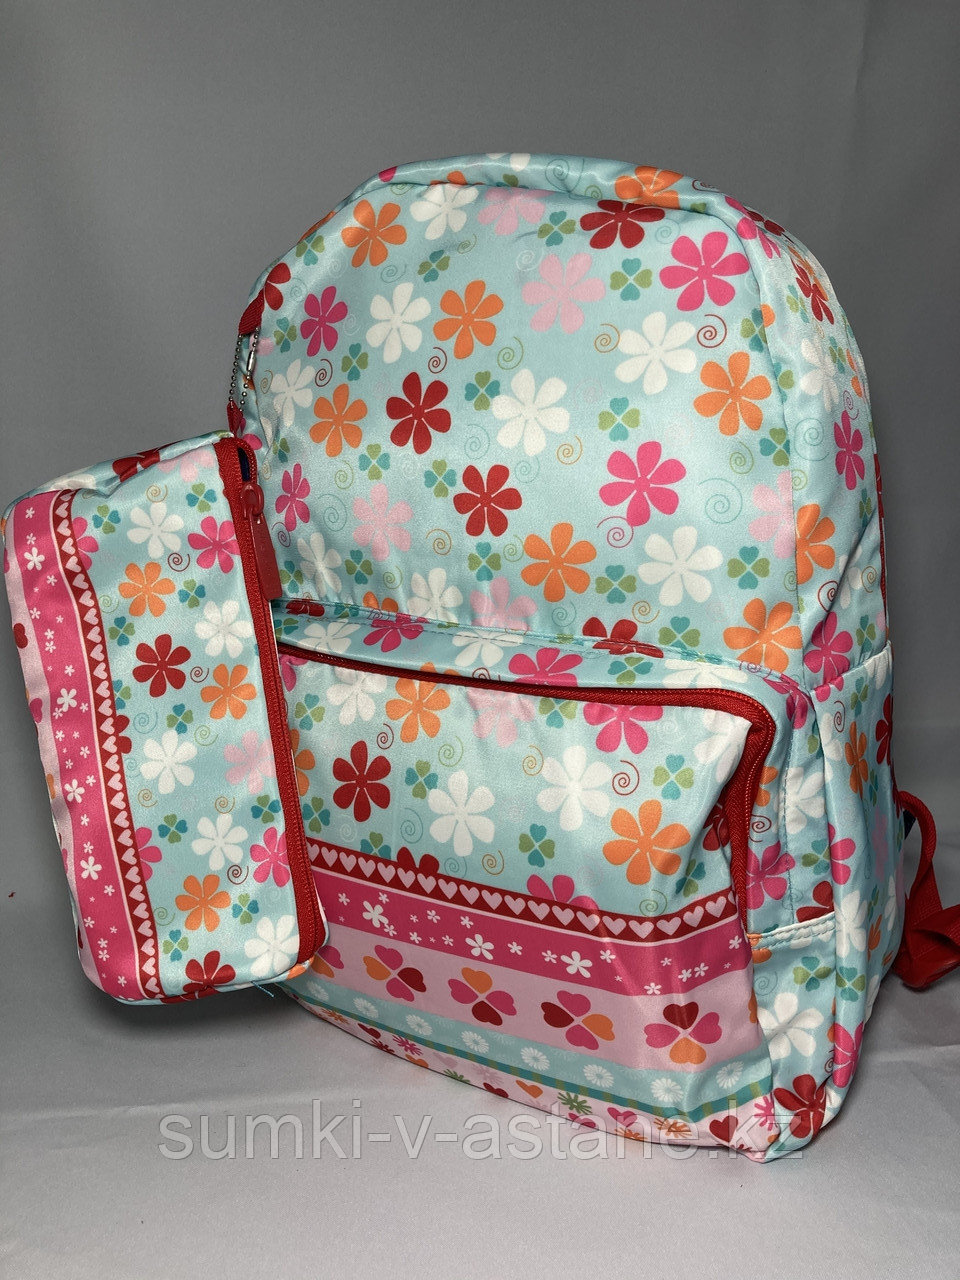 Школьный рюкзак для девочек "Glossy Bird" двухсторонний (высота 41 см, ширина 30 см, глубина 14 см)